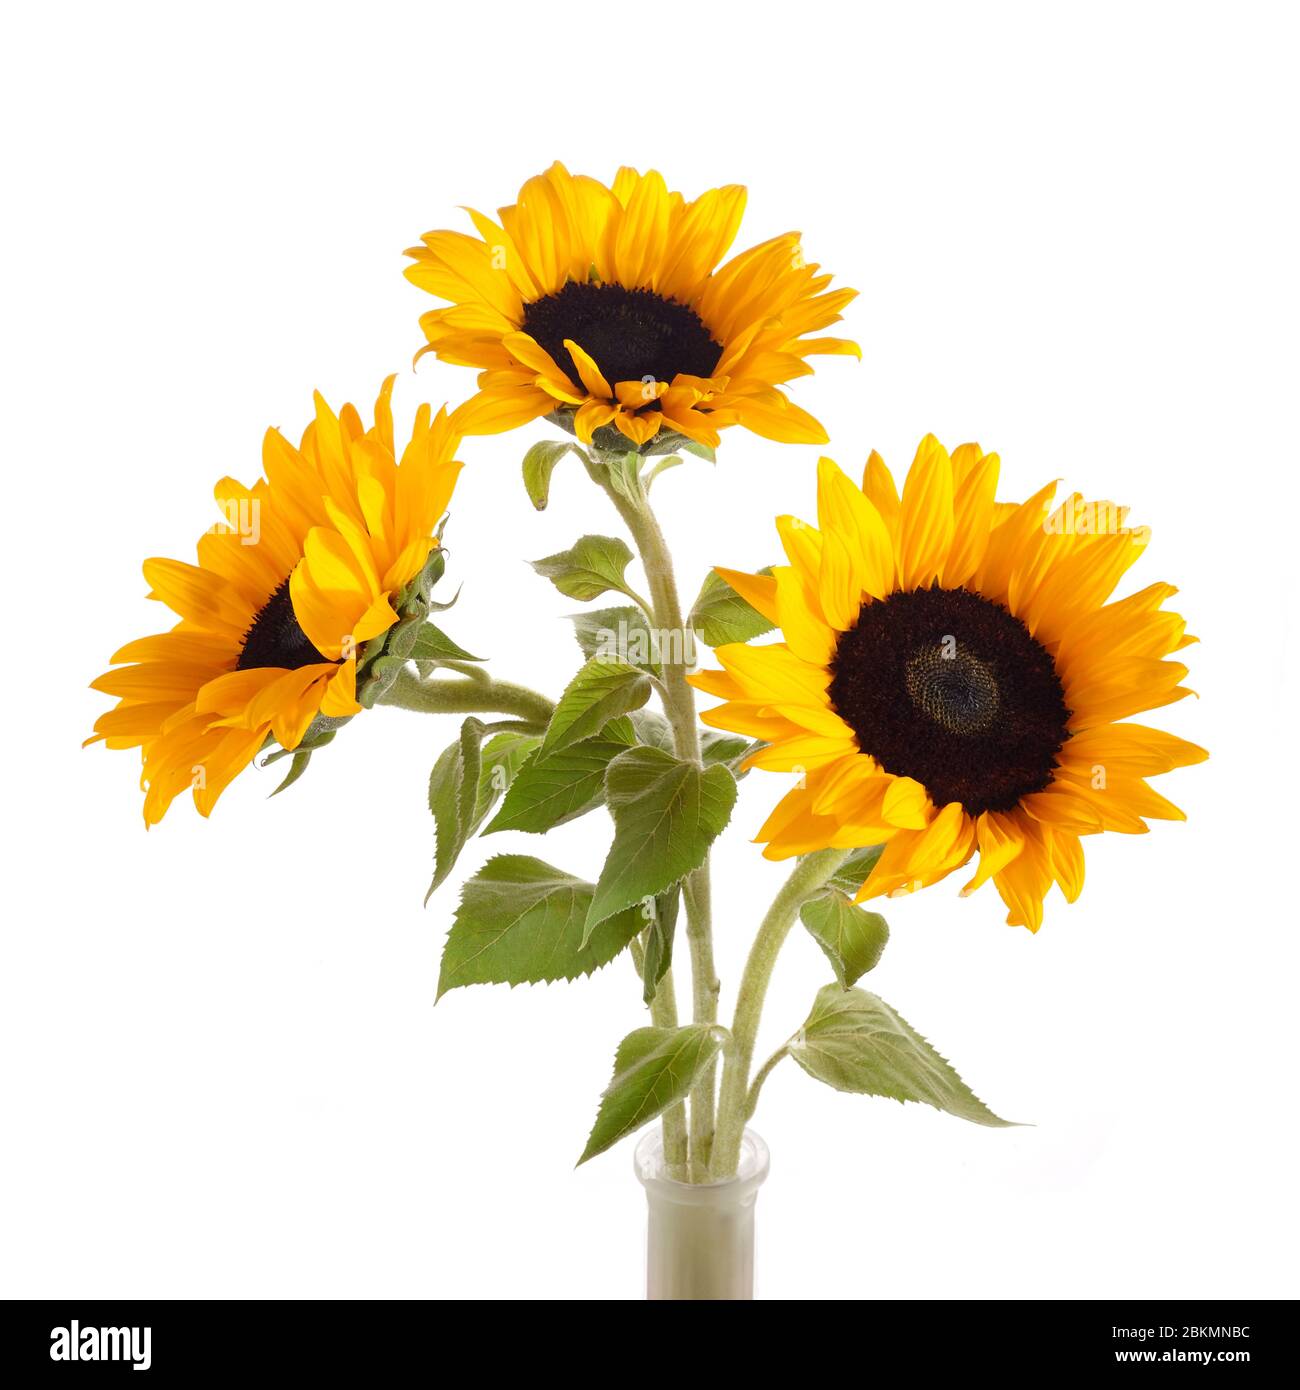 Sunflowers isolated on white background. Seasonal nature background. Stock Photo